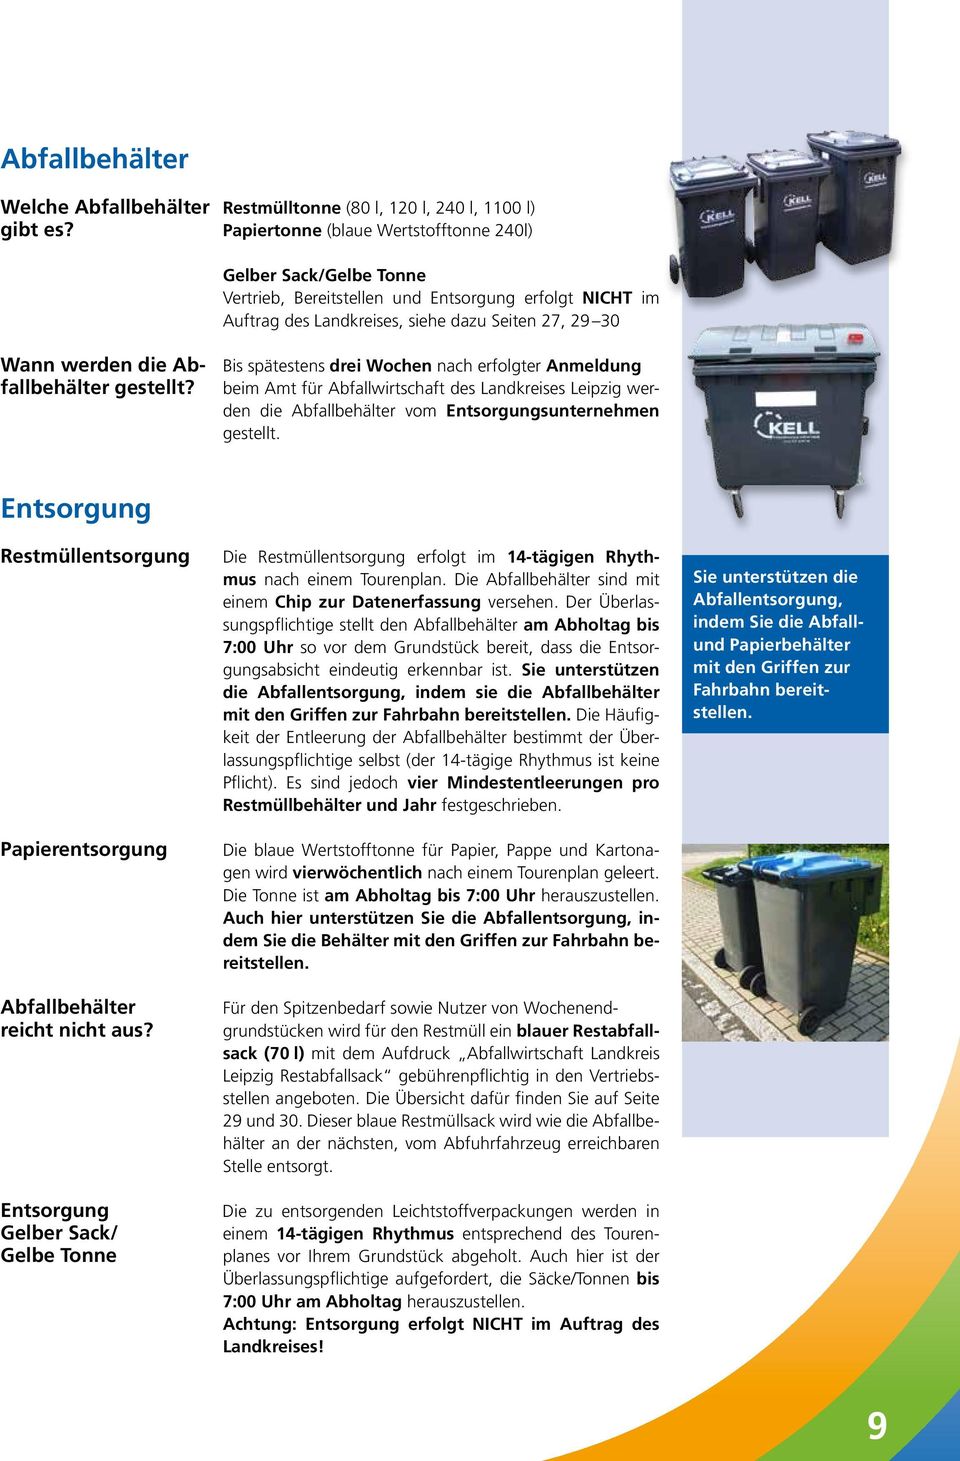 spätestens drei Wochen nach erfolgter Anmeldung fallbehälter gestellt? beim Amt für Abfallwirtschaft des Landkreises Leipzig werden die Abfallbehälter vom Entsorgungsunternehmen gestellt.